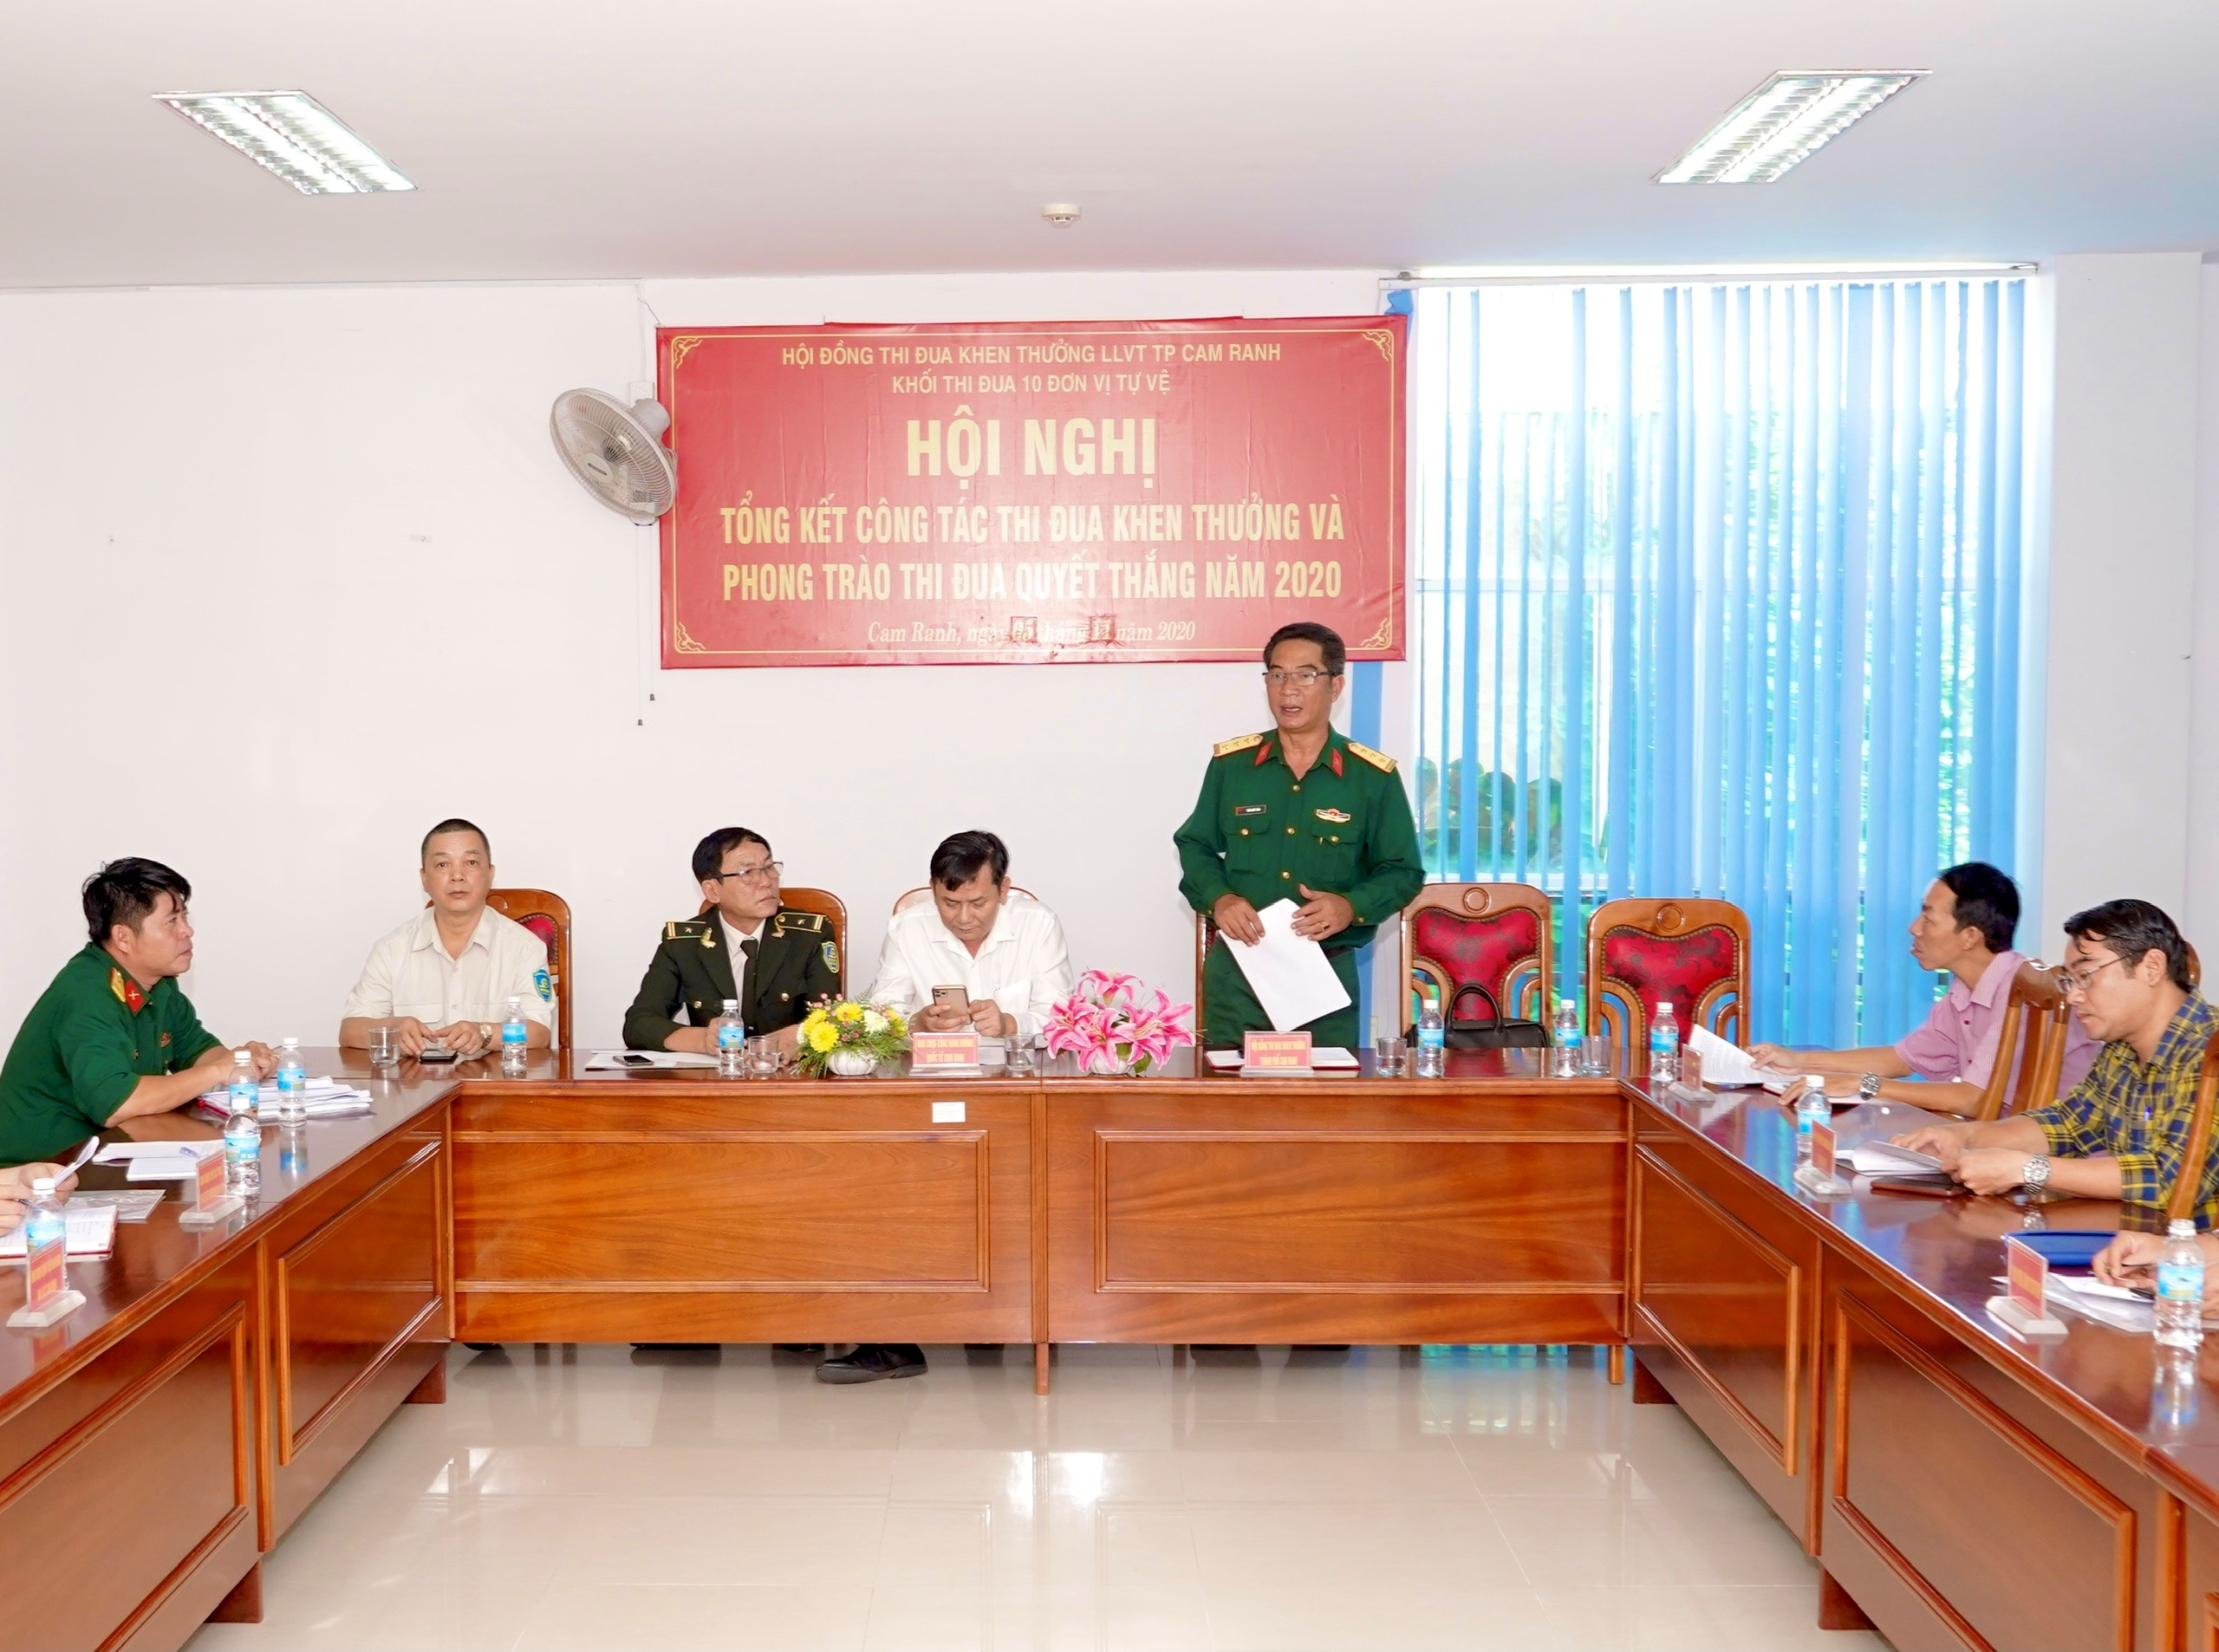 Đồng chí Thượng tá Trần Quốc Toản – Chính trị viên – Chủ tịch Hội đồng thi đua,  khen thưởng LLVT thành phố Cam Ranh phát biểu chỉ đạo